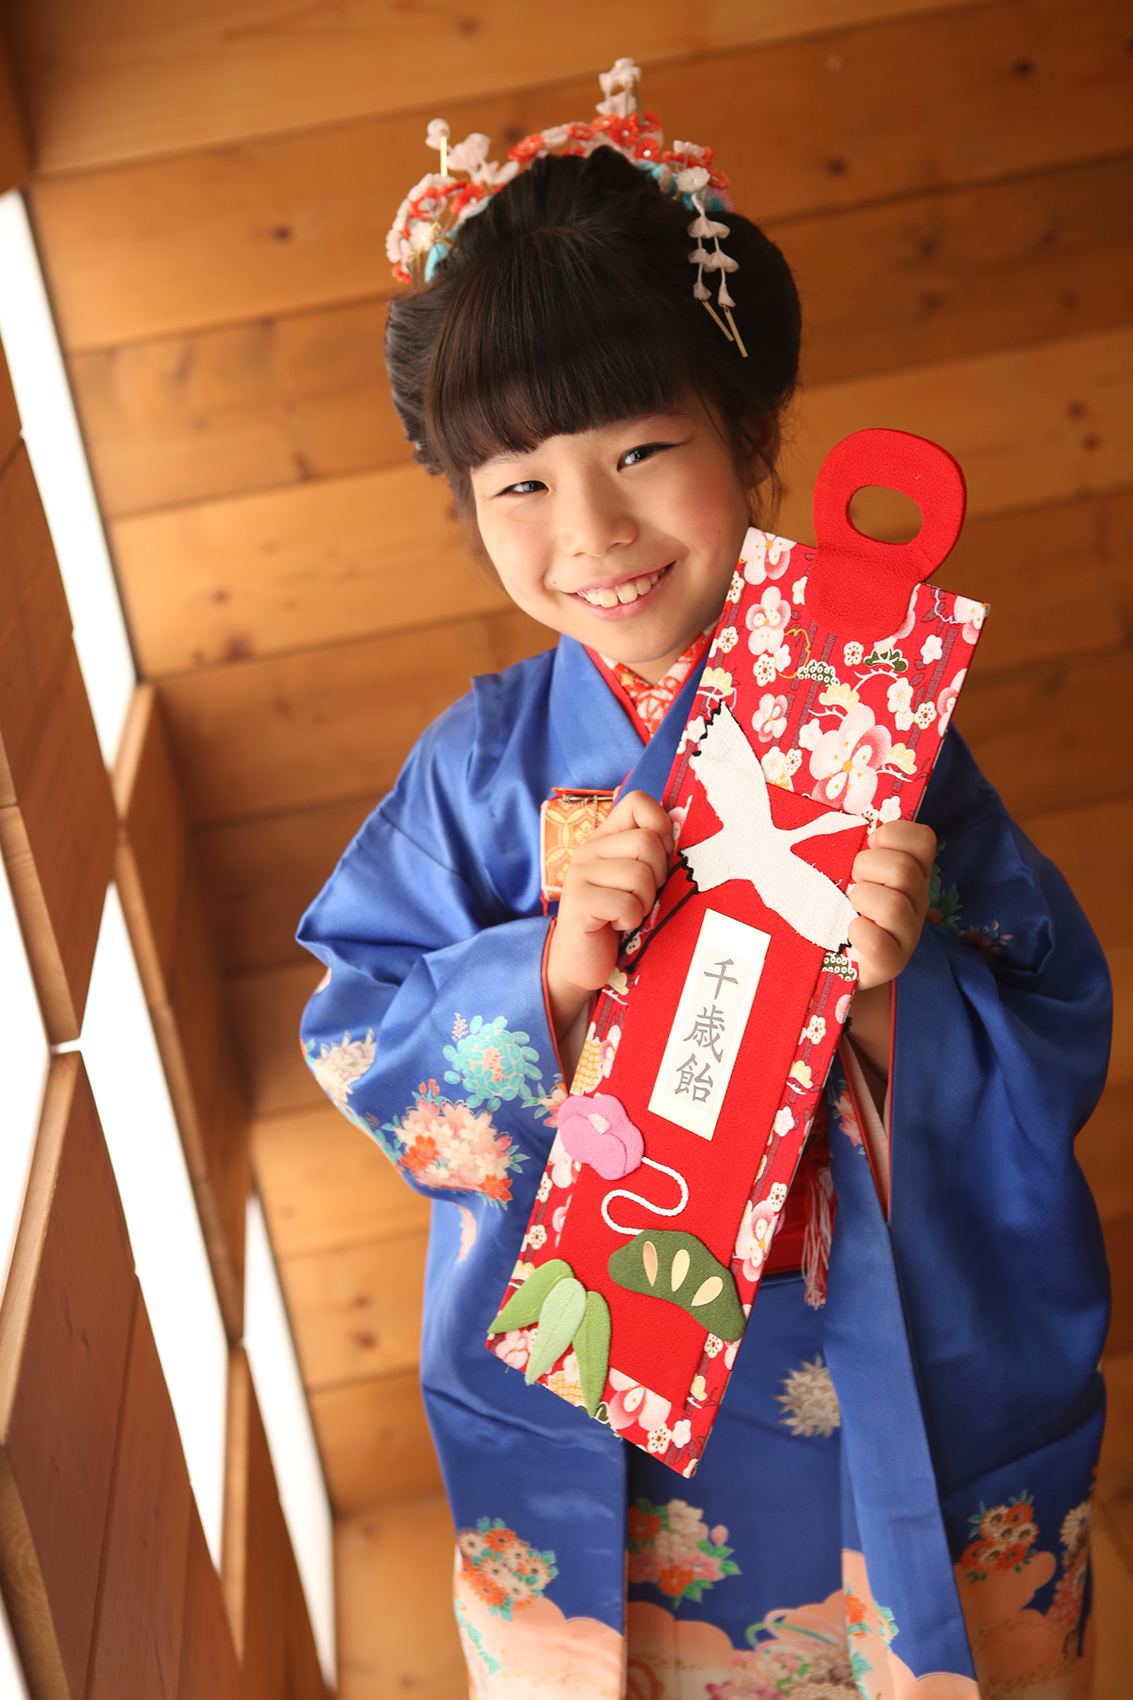 永田萌の7歳の着物 - 和服